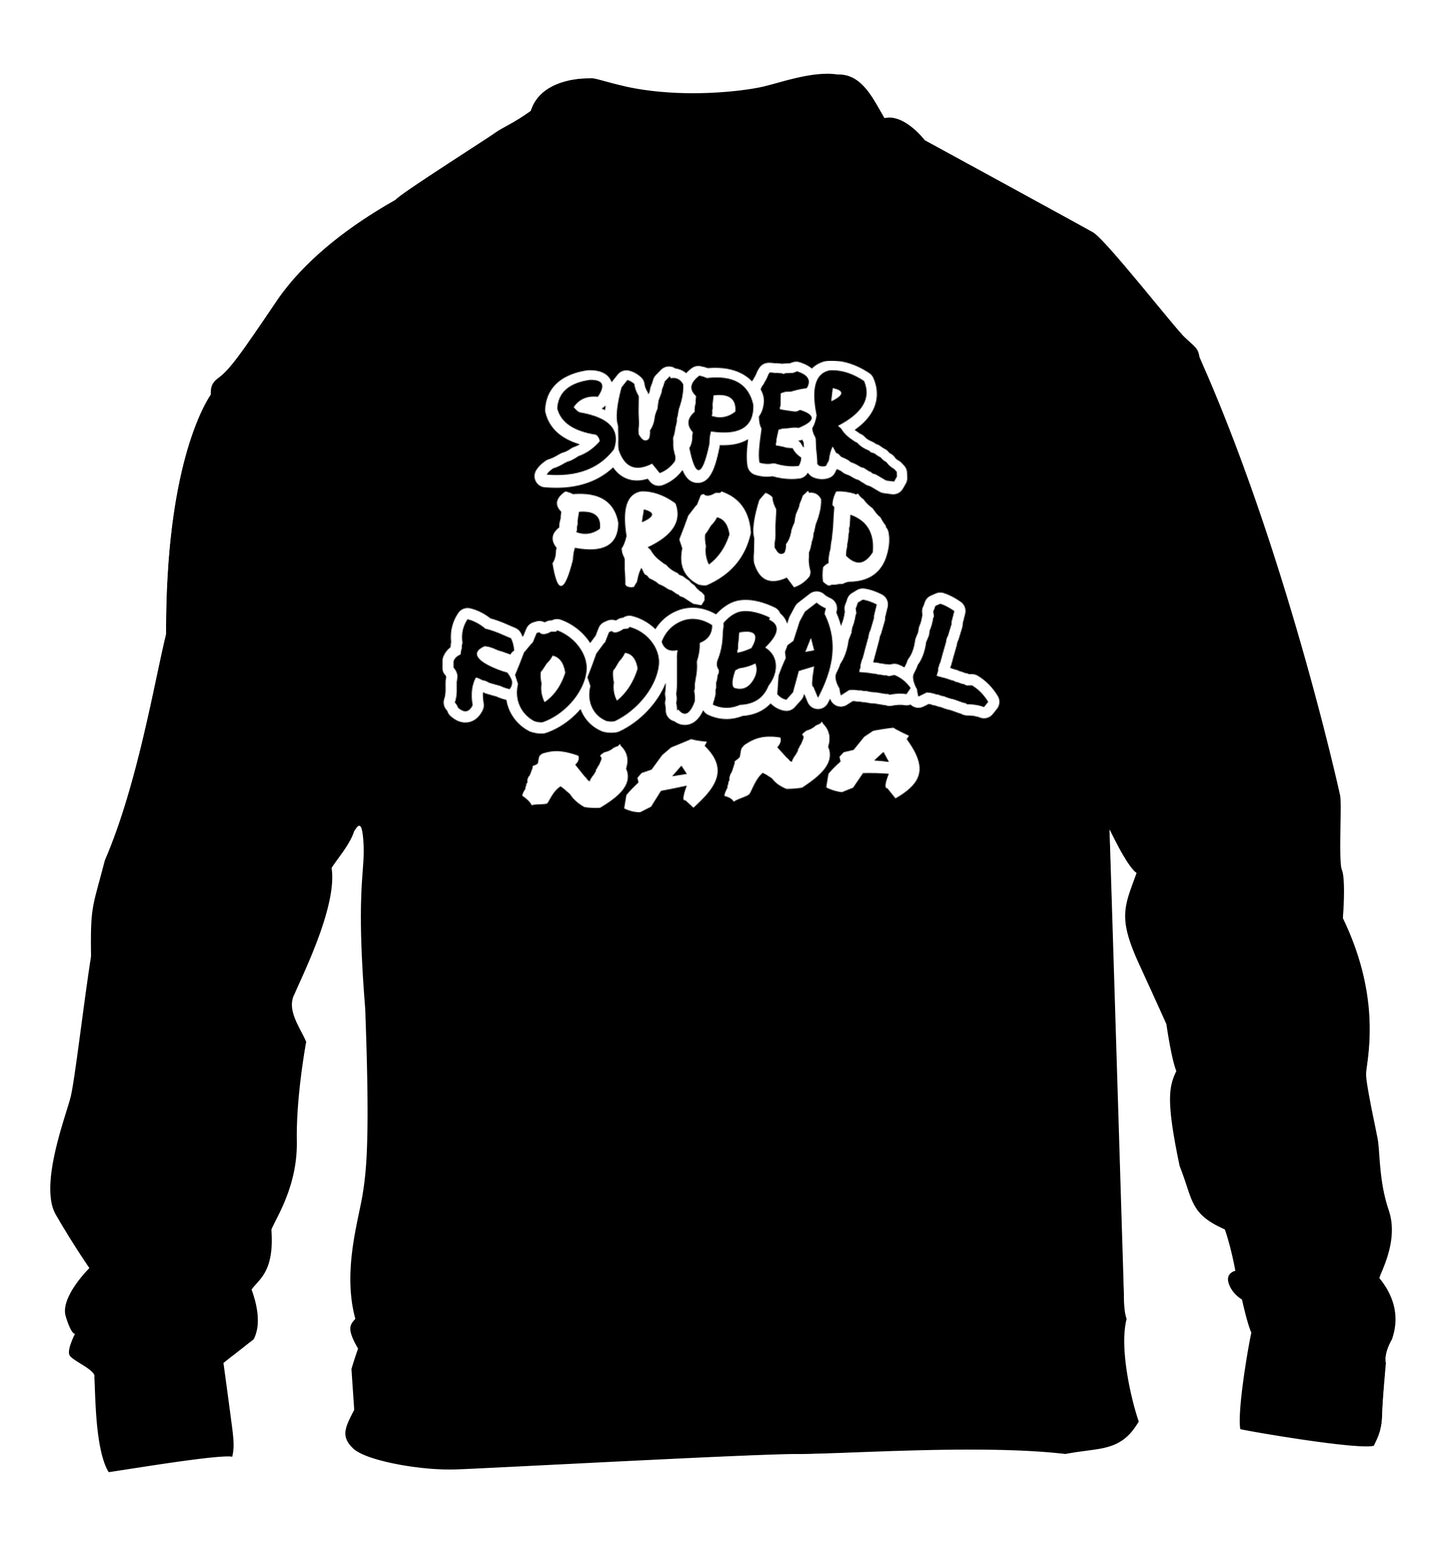 Super proud football nana children's black sweater 12-14 Years